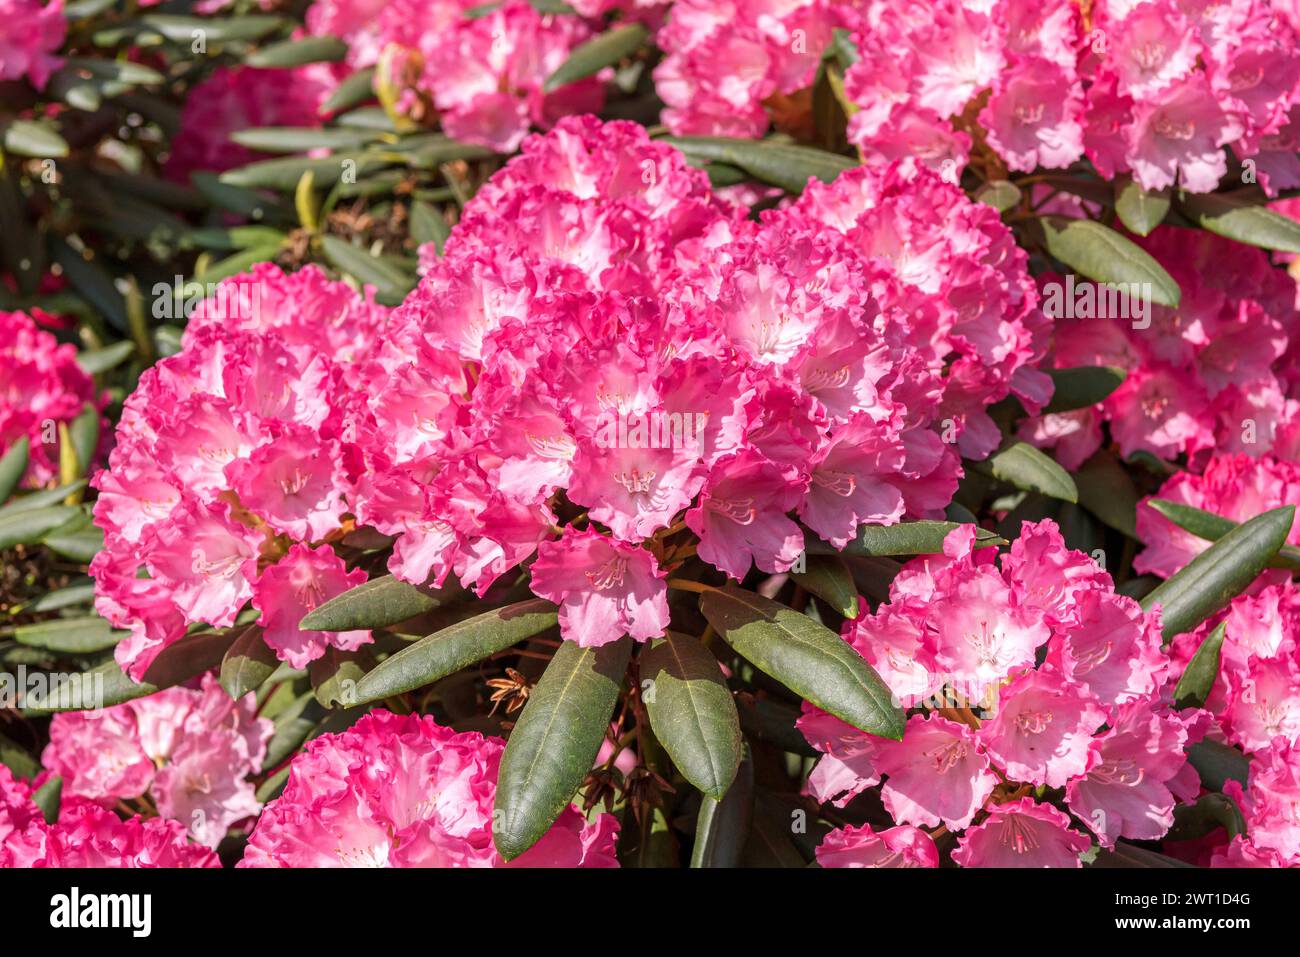 Rhododendron (Rhododendron 'Ninotschka', Rhododendron Kermesina Ninotschka), fioritura, cultivar Ninotschka Foto Stock